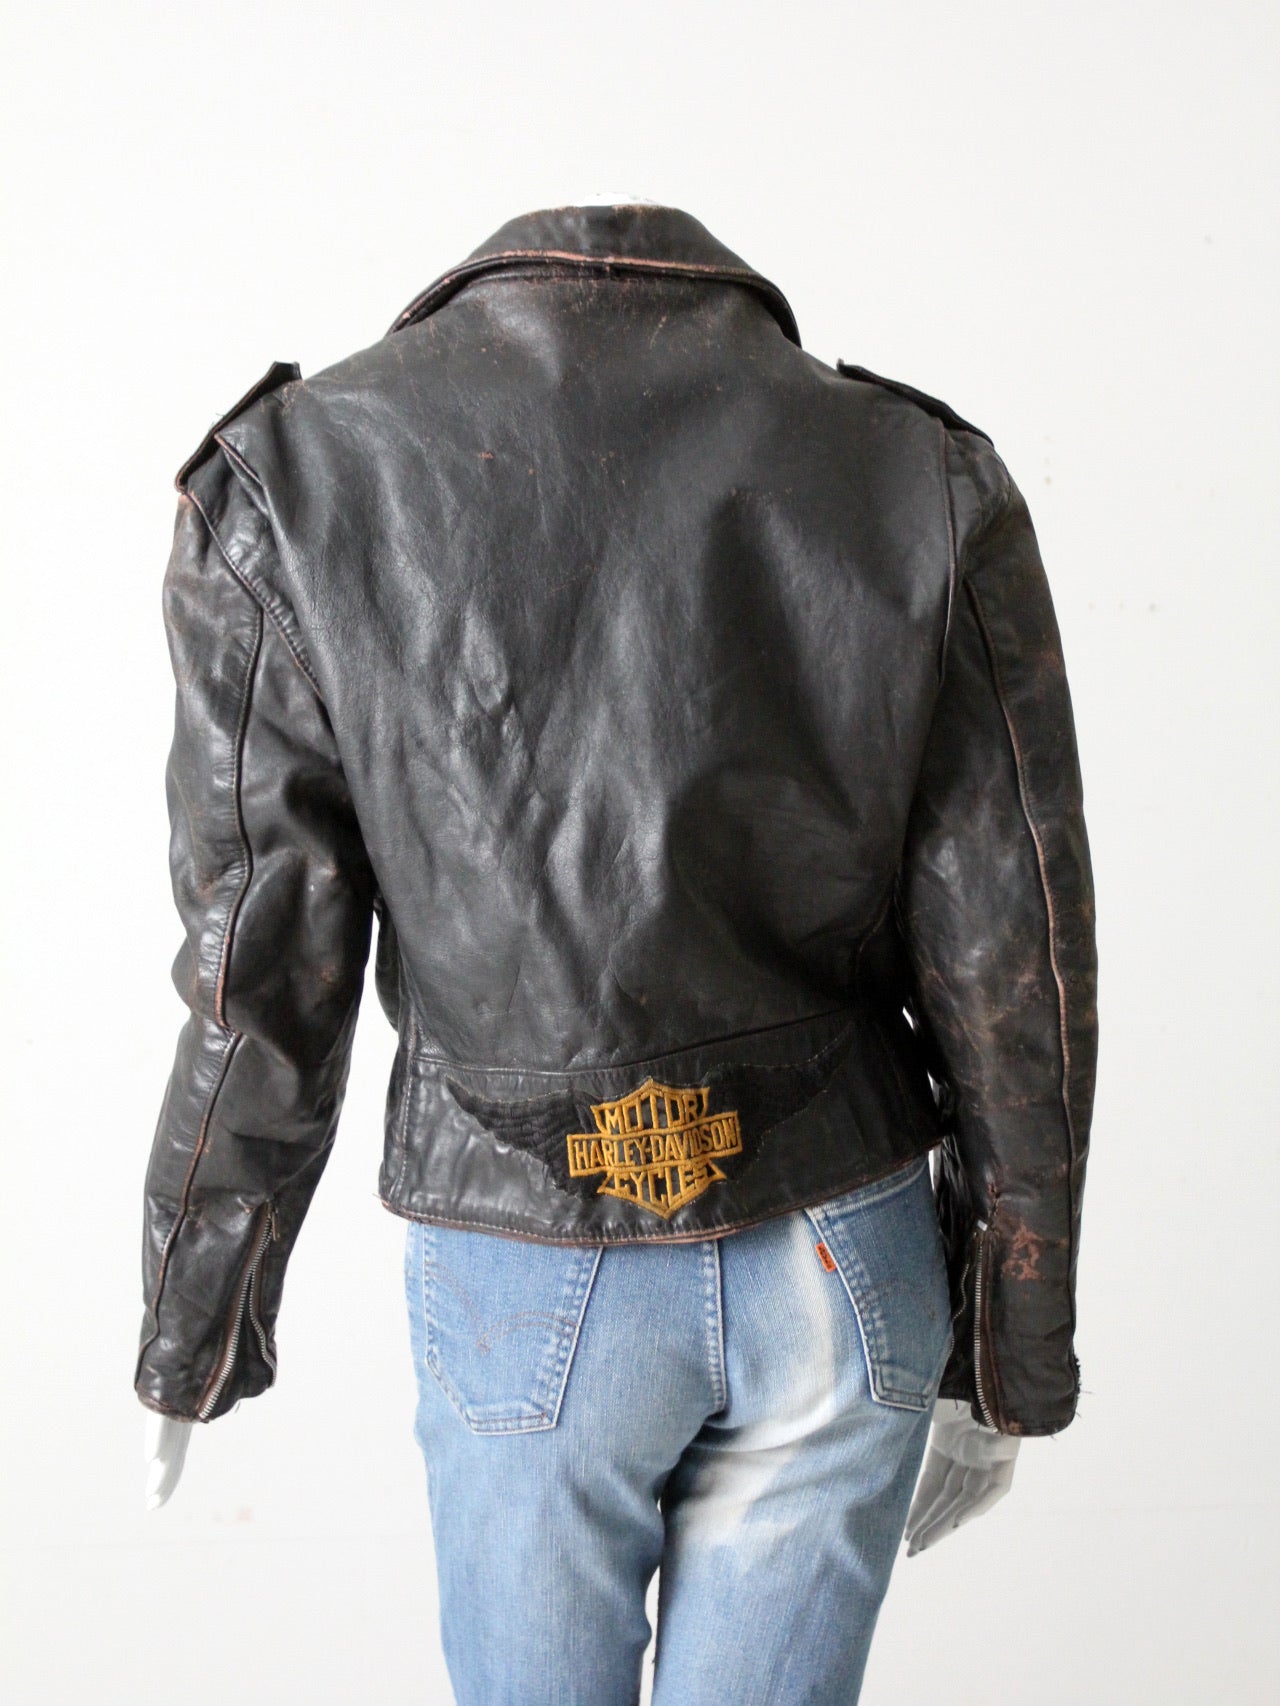 Vintage 70's Harley Davidson Jacket